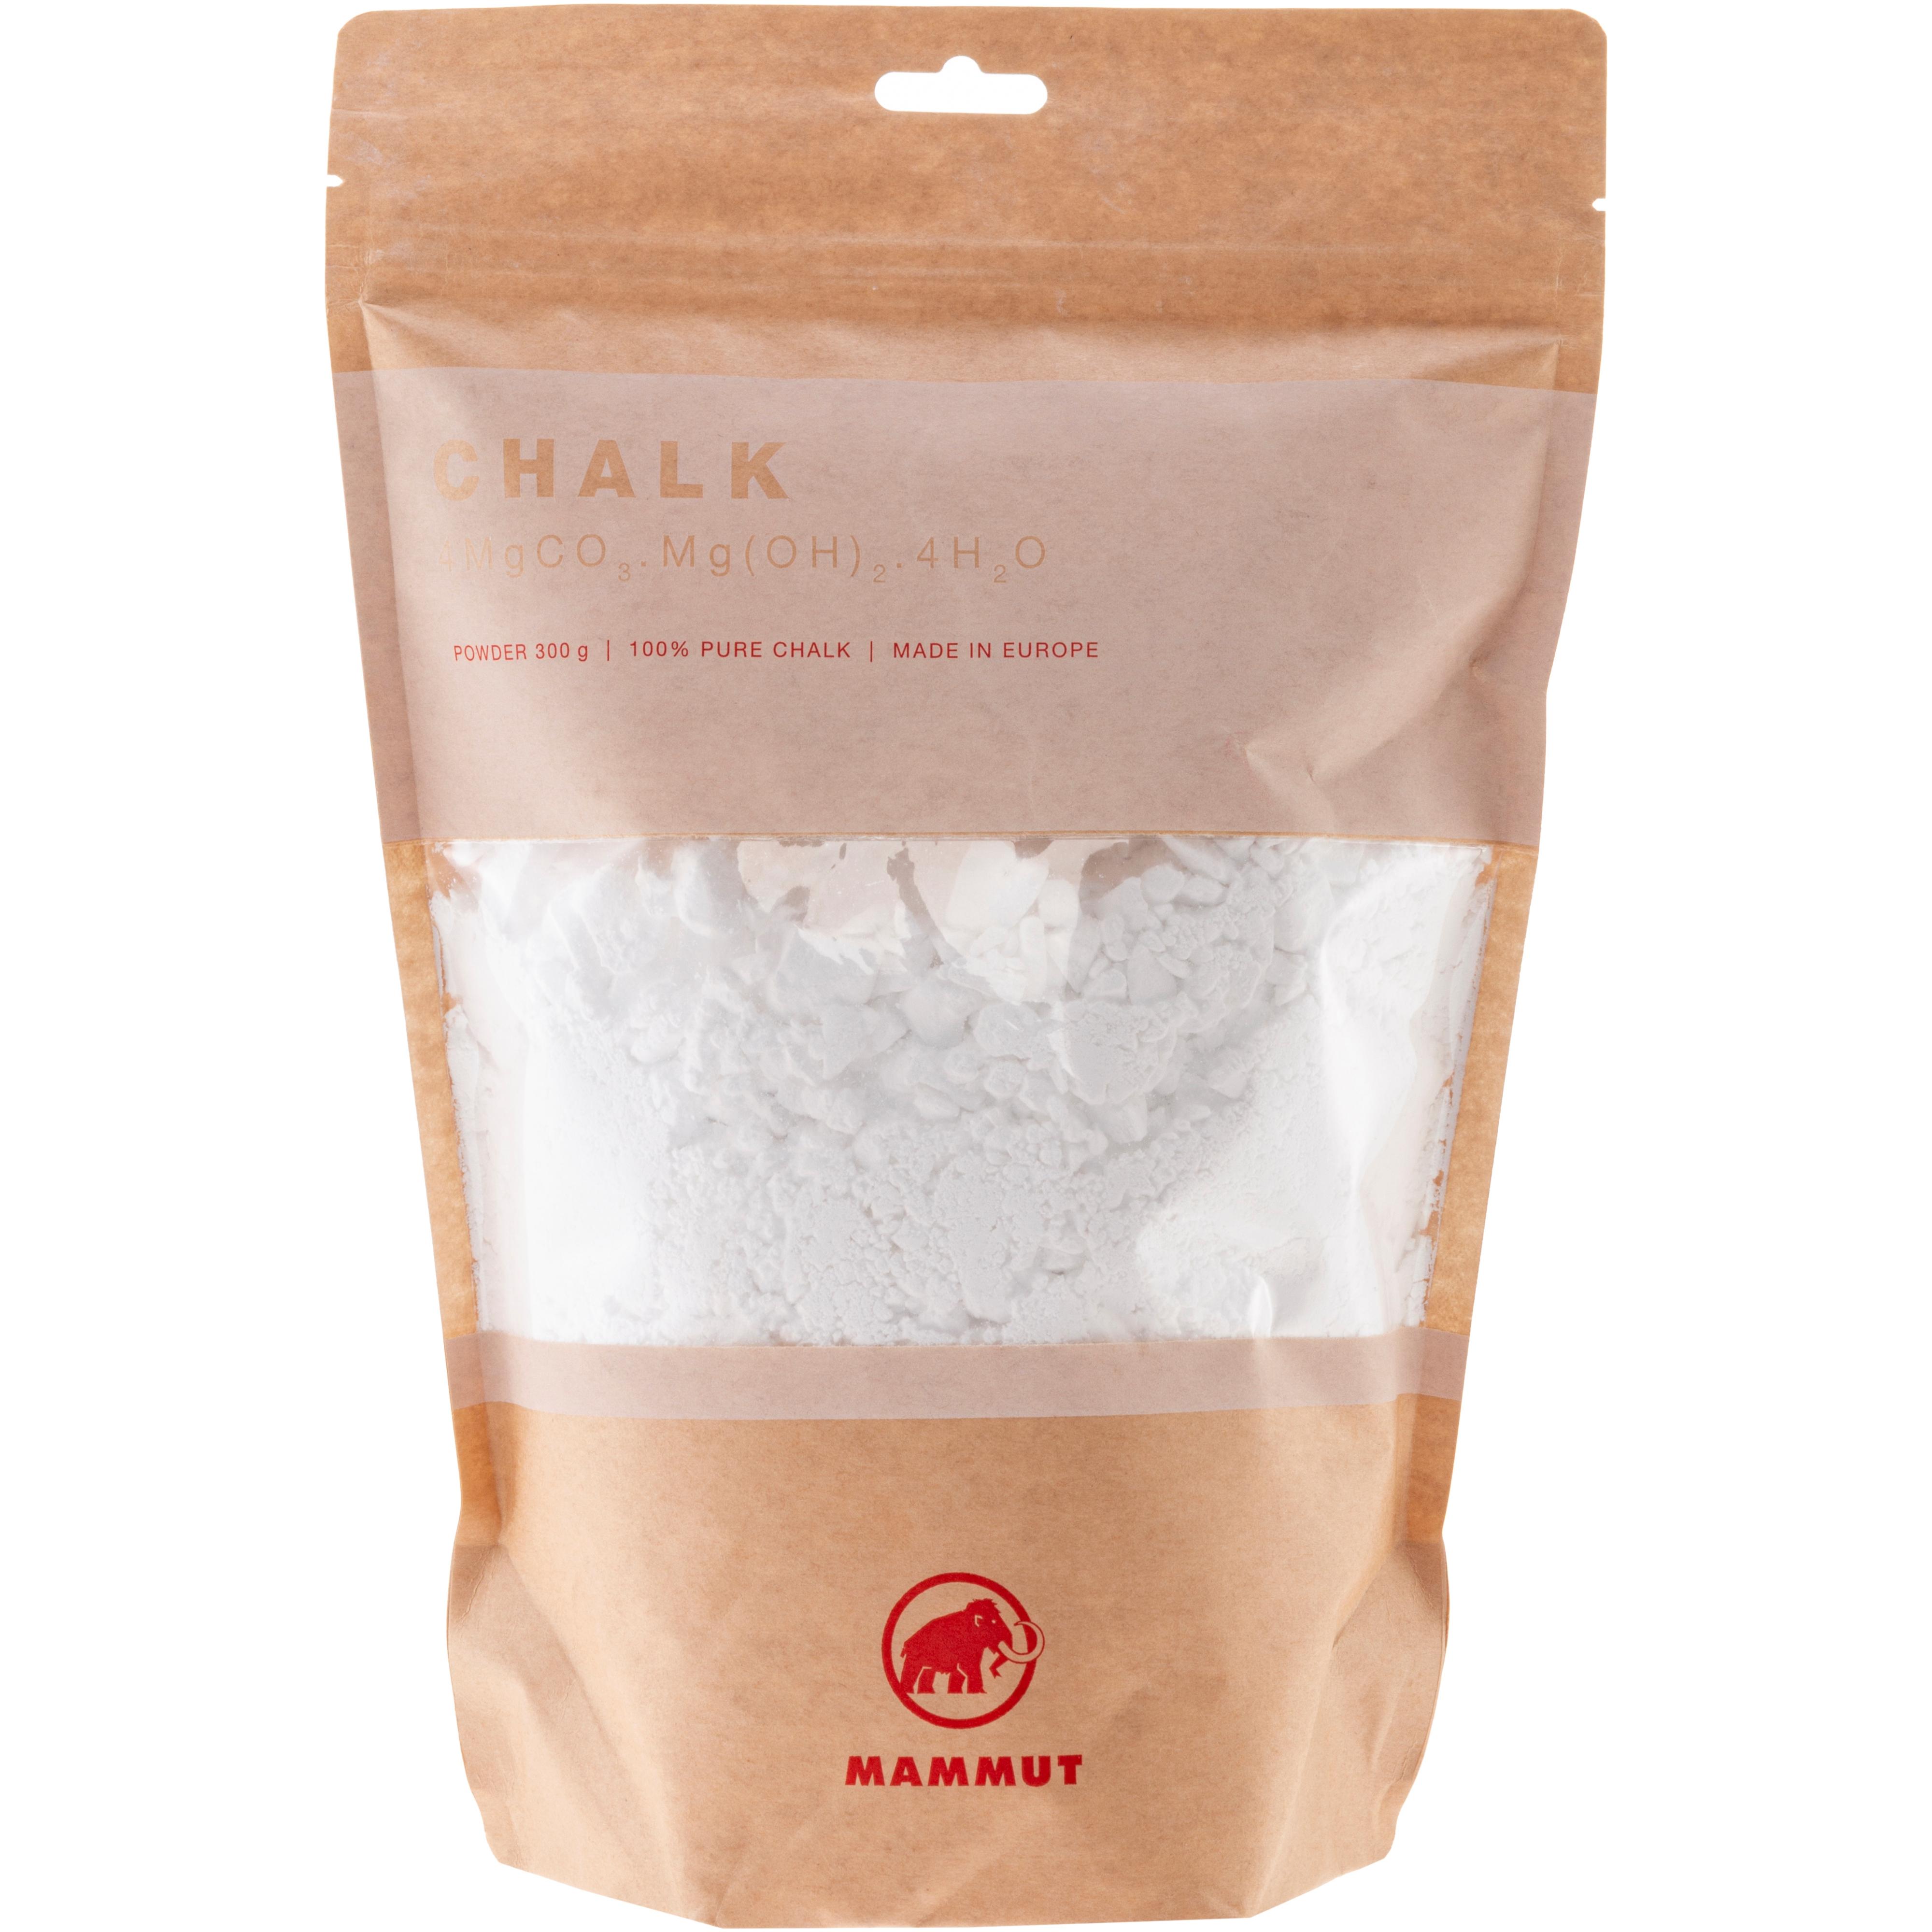 Image of Mammut Chalk Powder 300 g Chalk